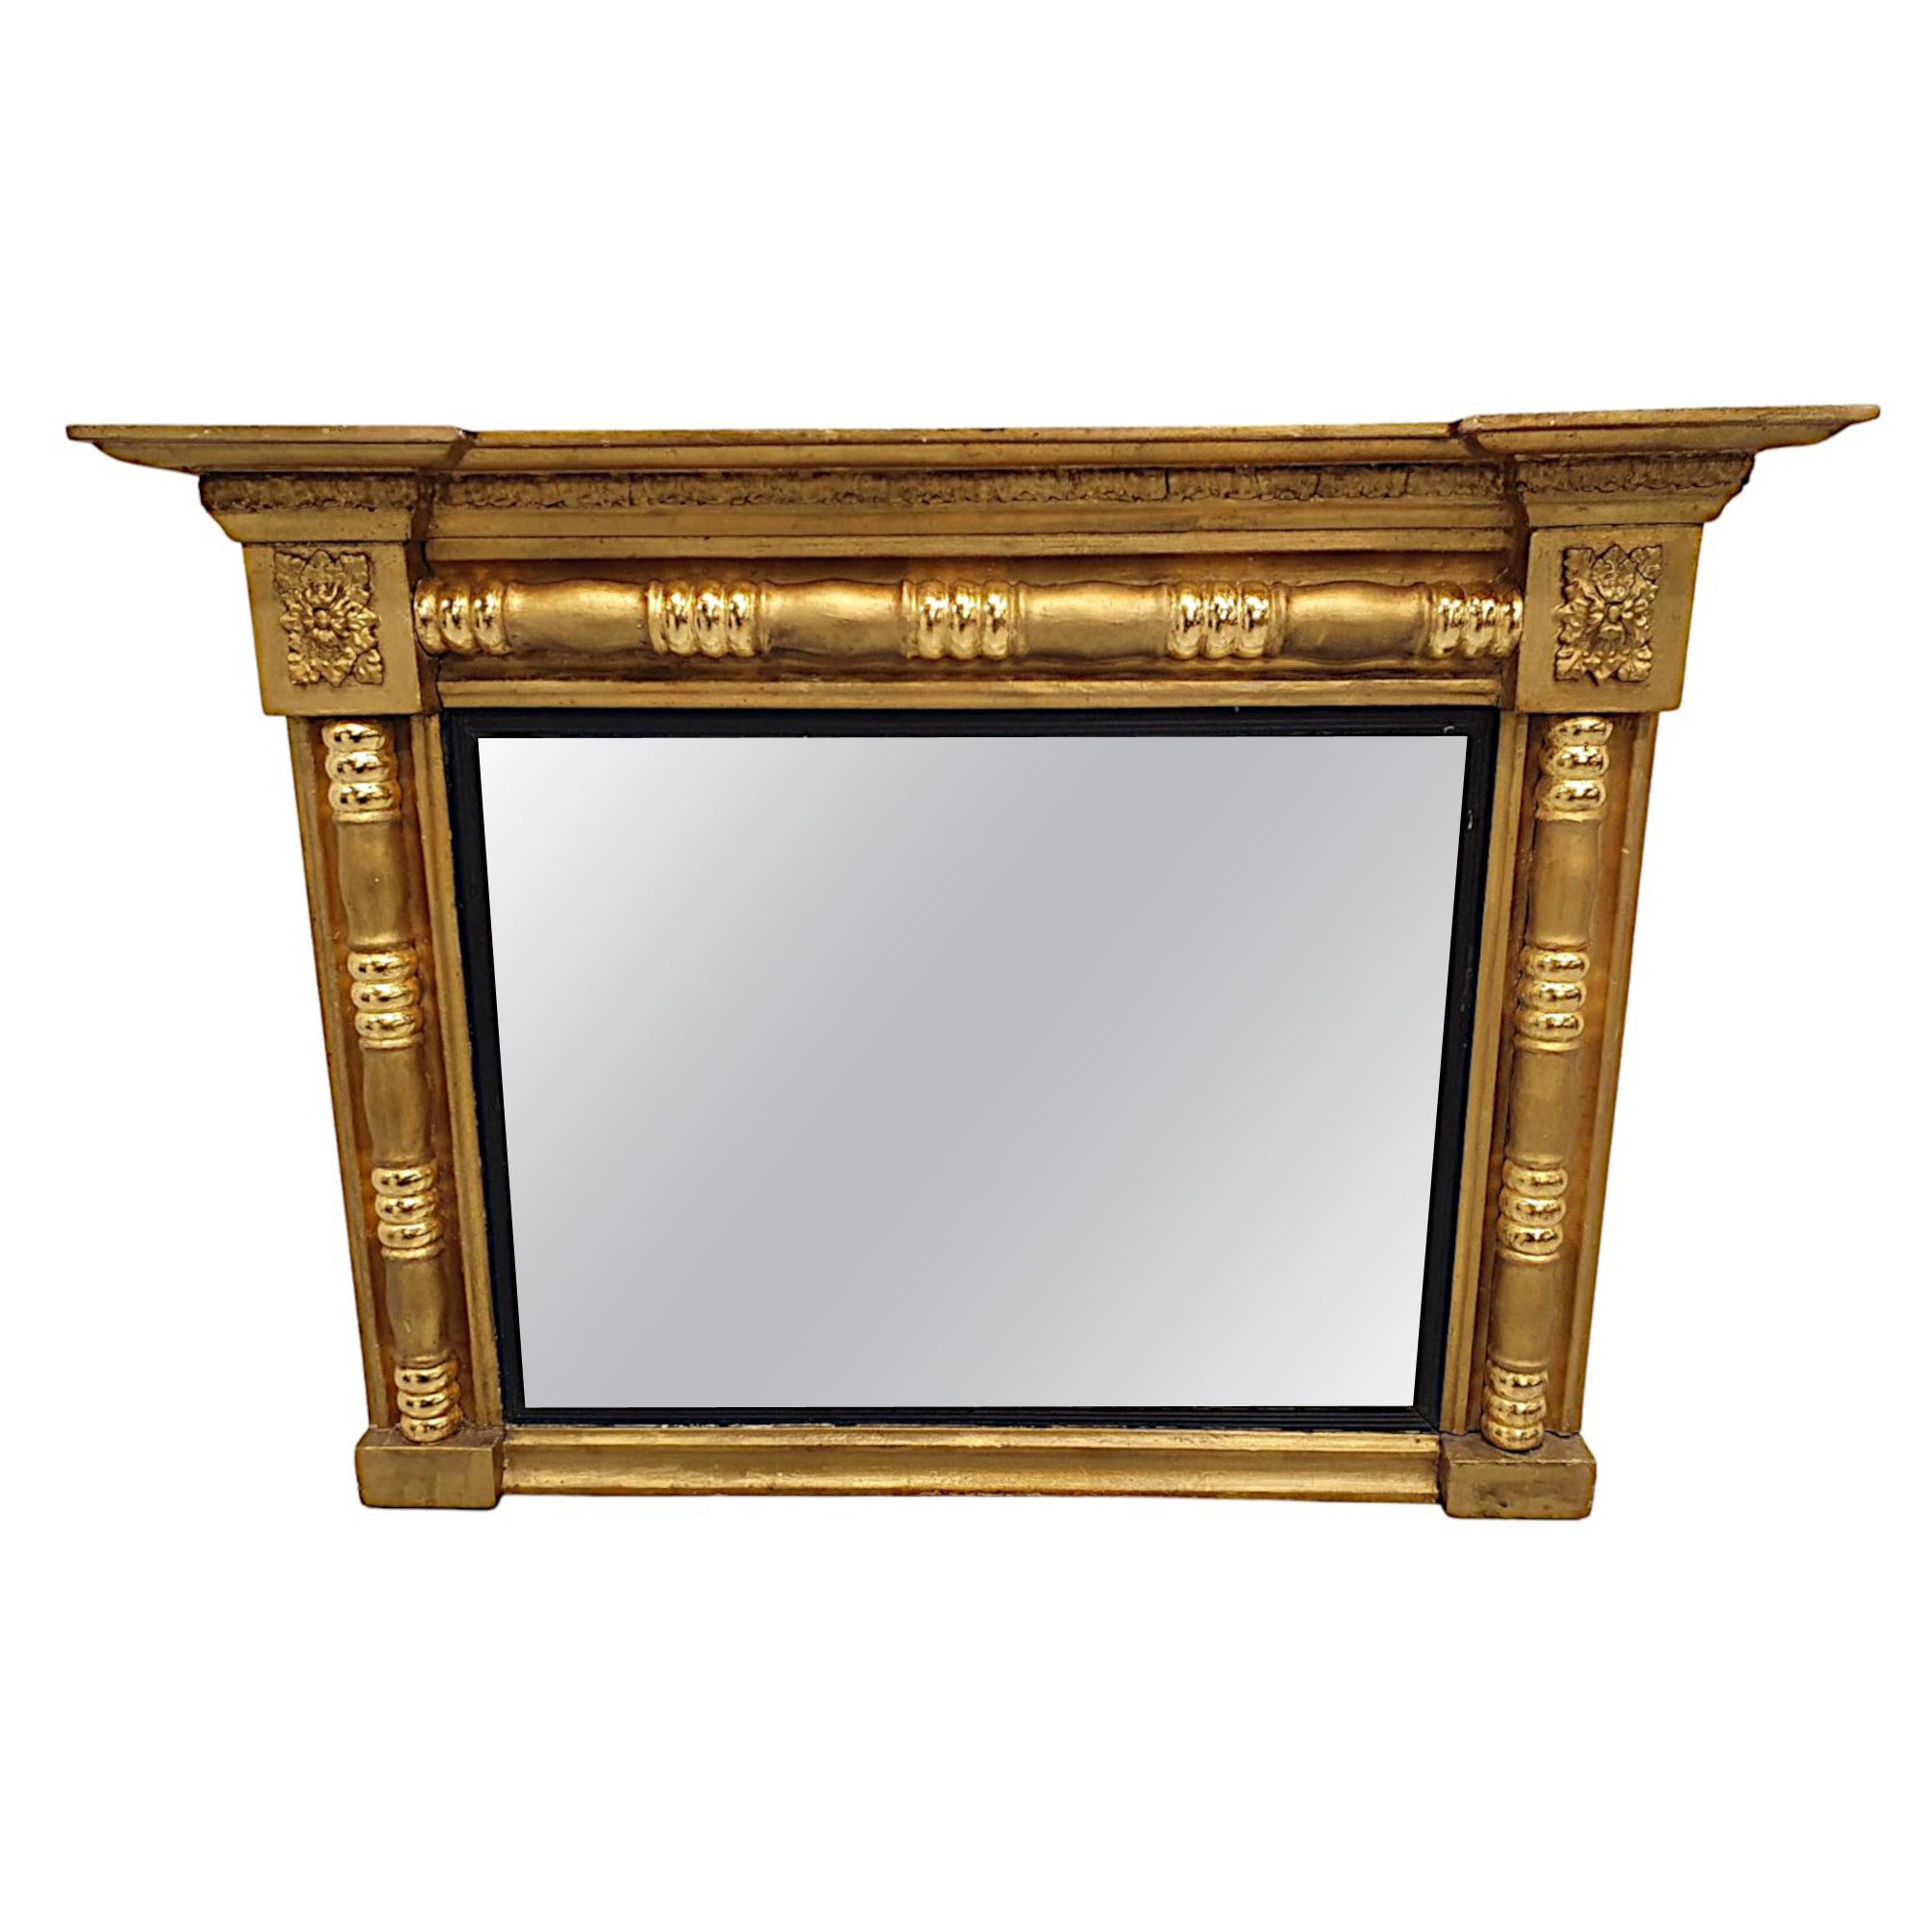 Magnifique miroir en bois doré du début du 19e siècle